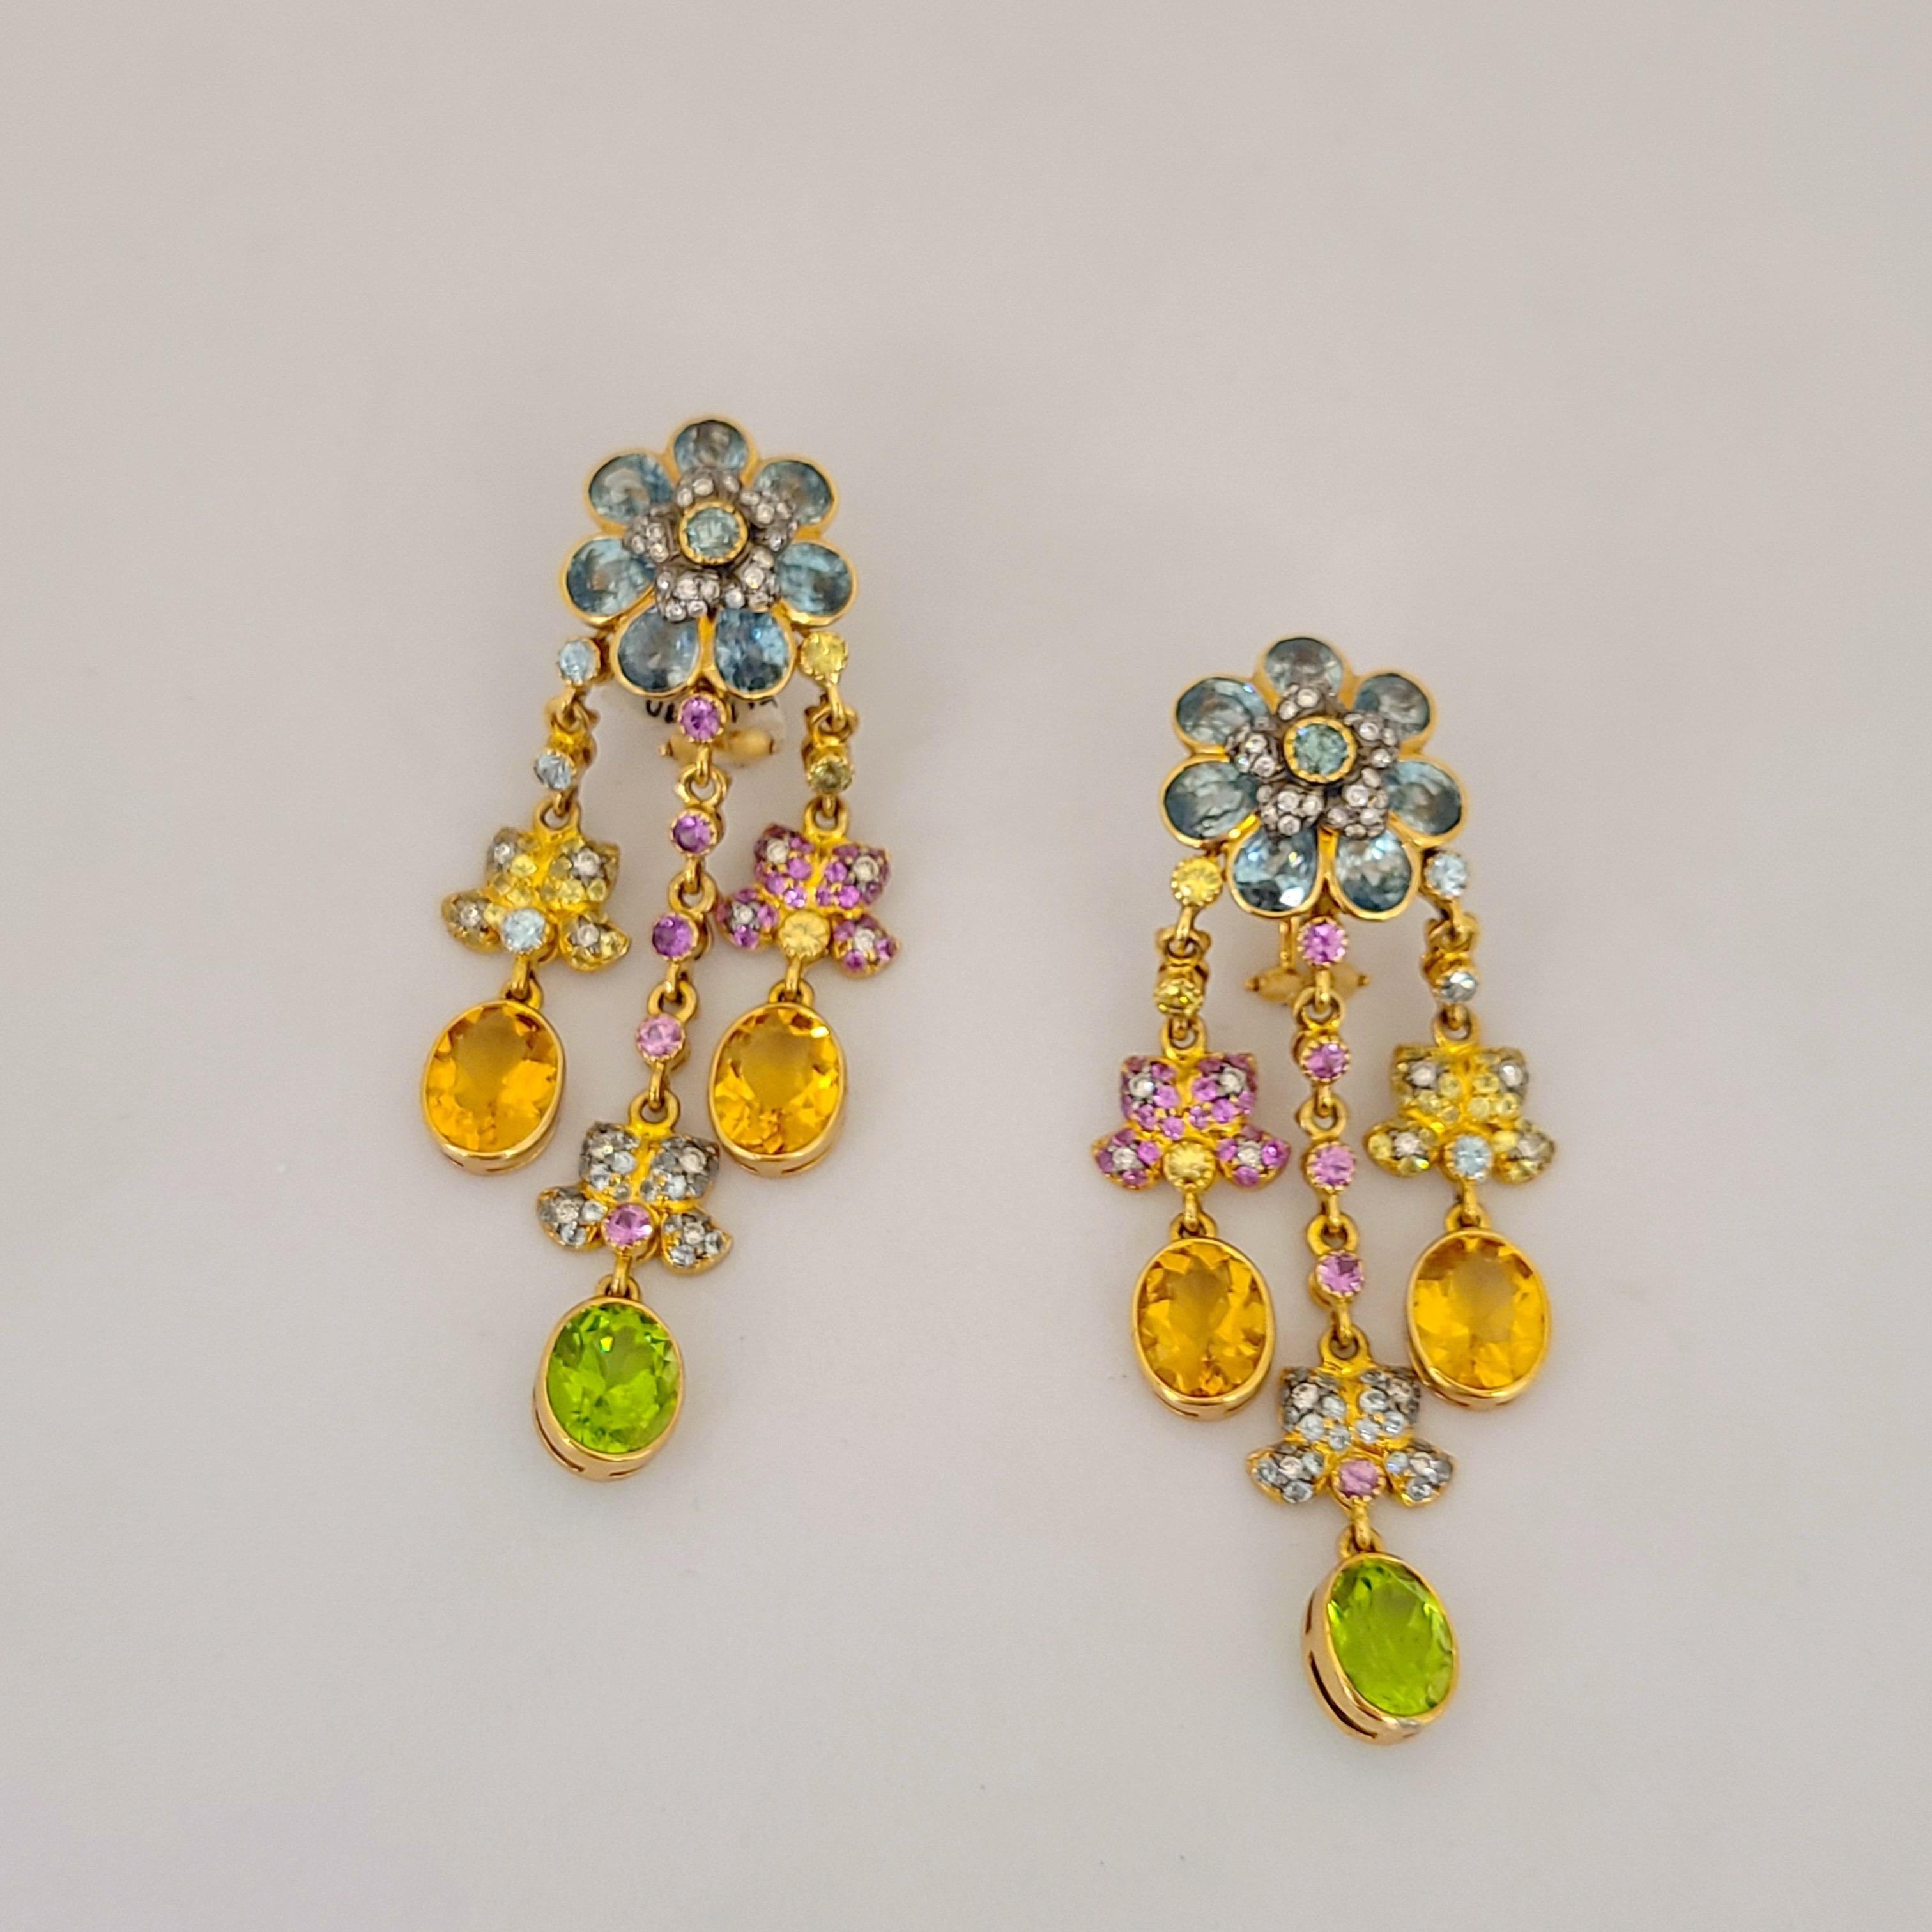 Connu pour son élégance classique et son style contemporain, Zorab crée de magnifiques bijoux depuis plus de 40 ans. Une entreprise familiale dirigée aujourd'hui par la deuxième génération, spécialisée dans les pièces ludiques et sophistiquées.
Ces